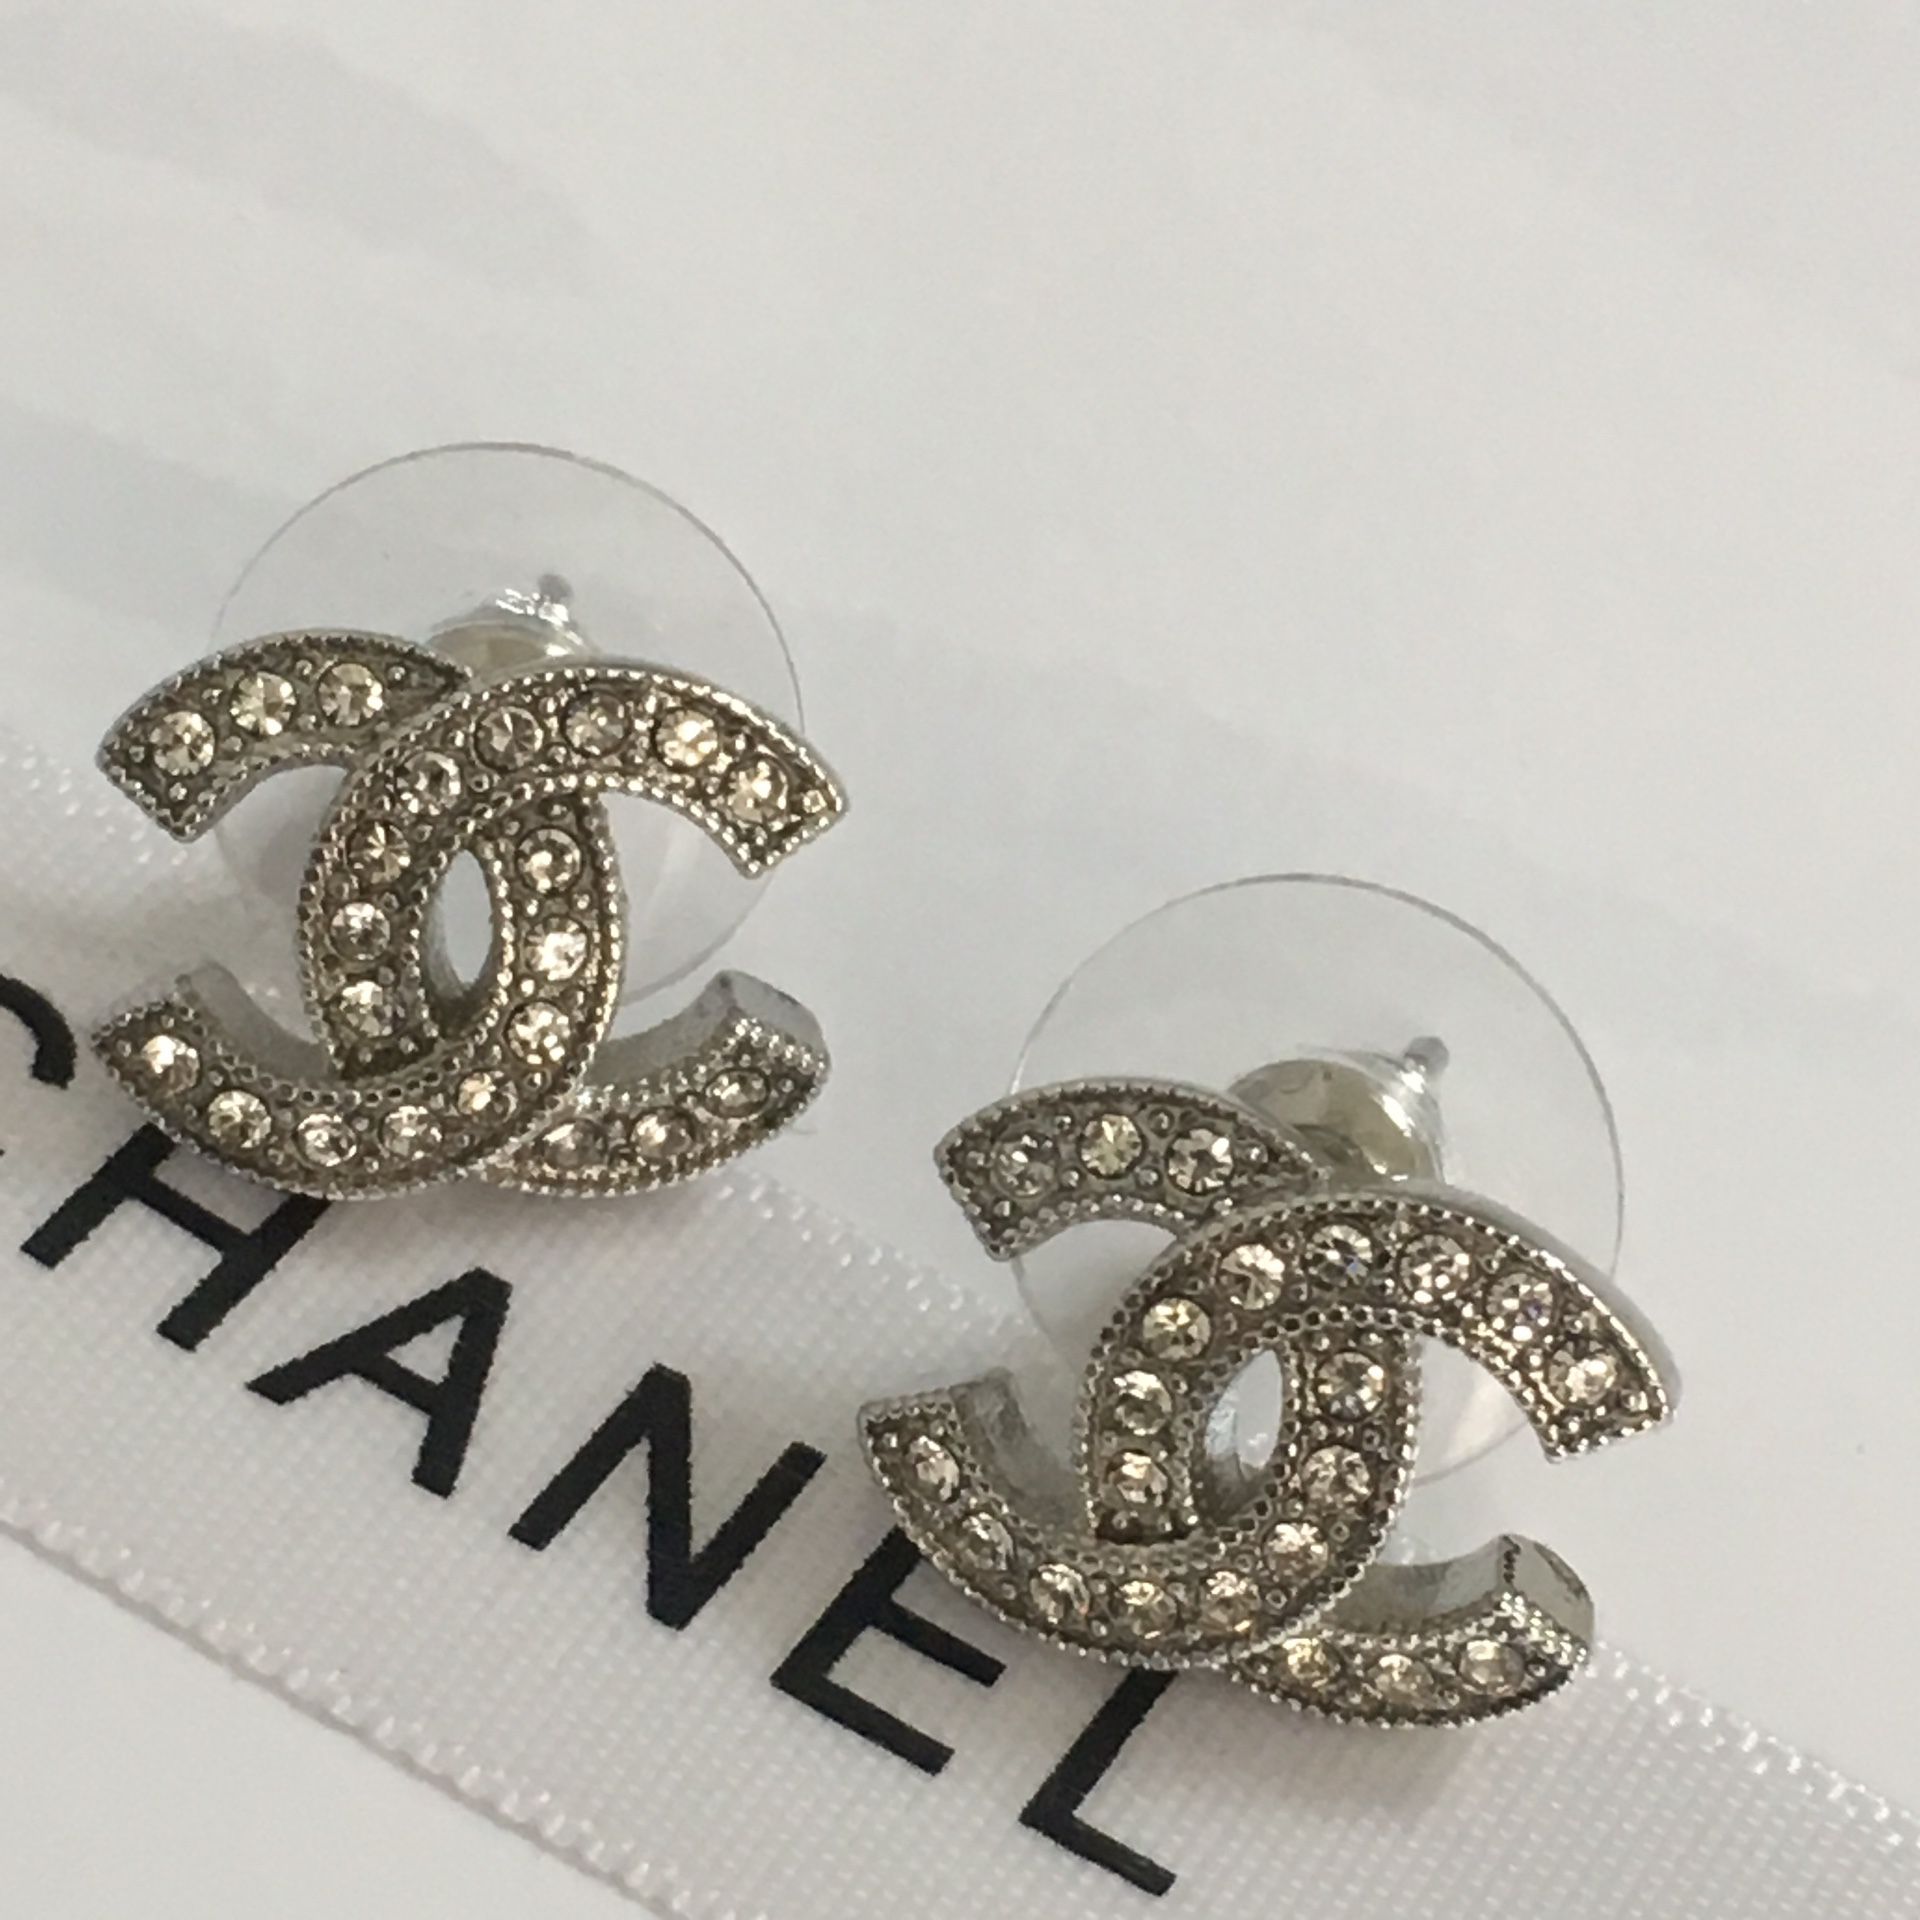 Chanel Earrings Diamond Studs for Sale in Regina, KY - OfferUp